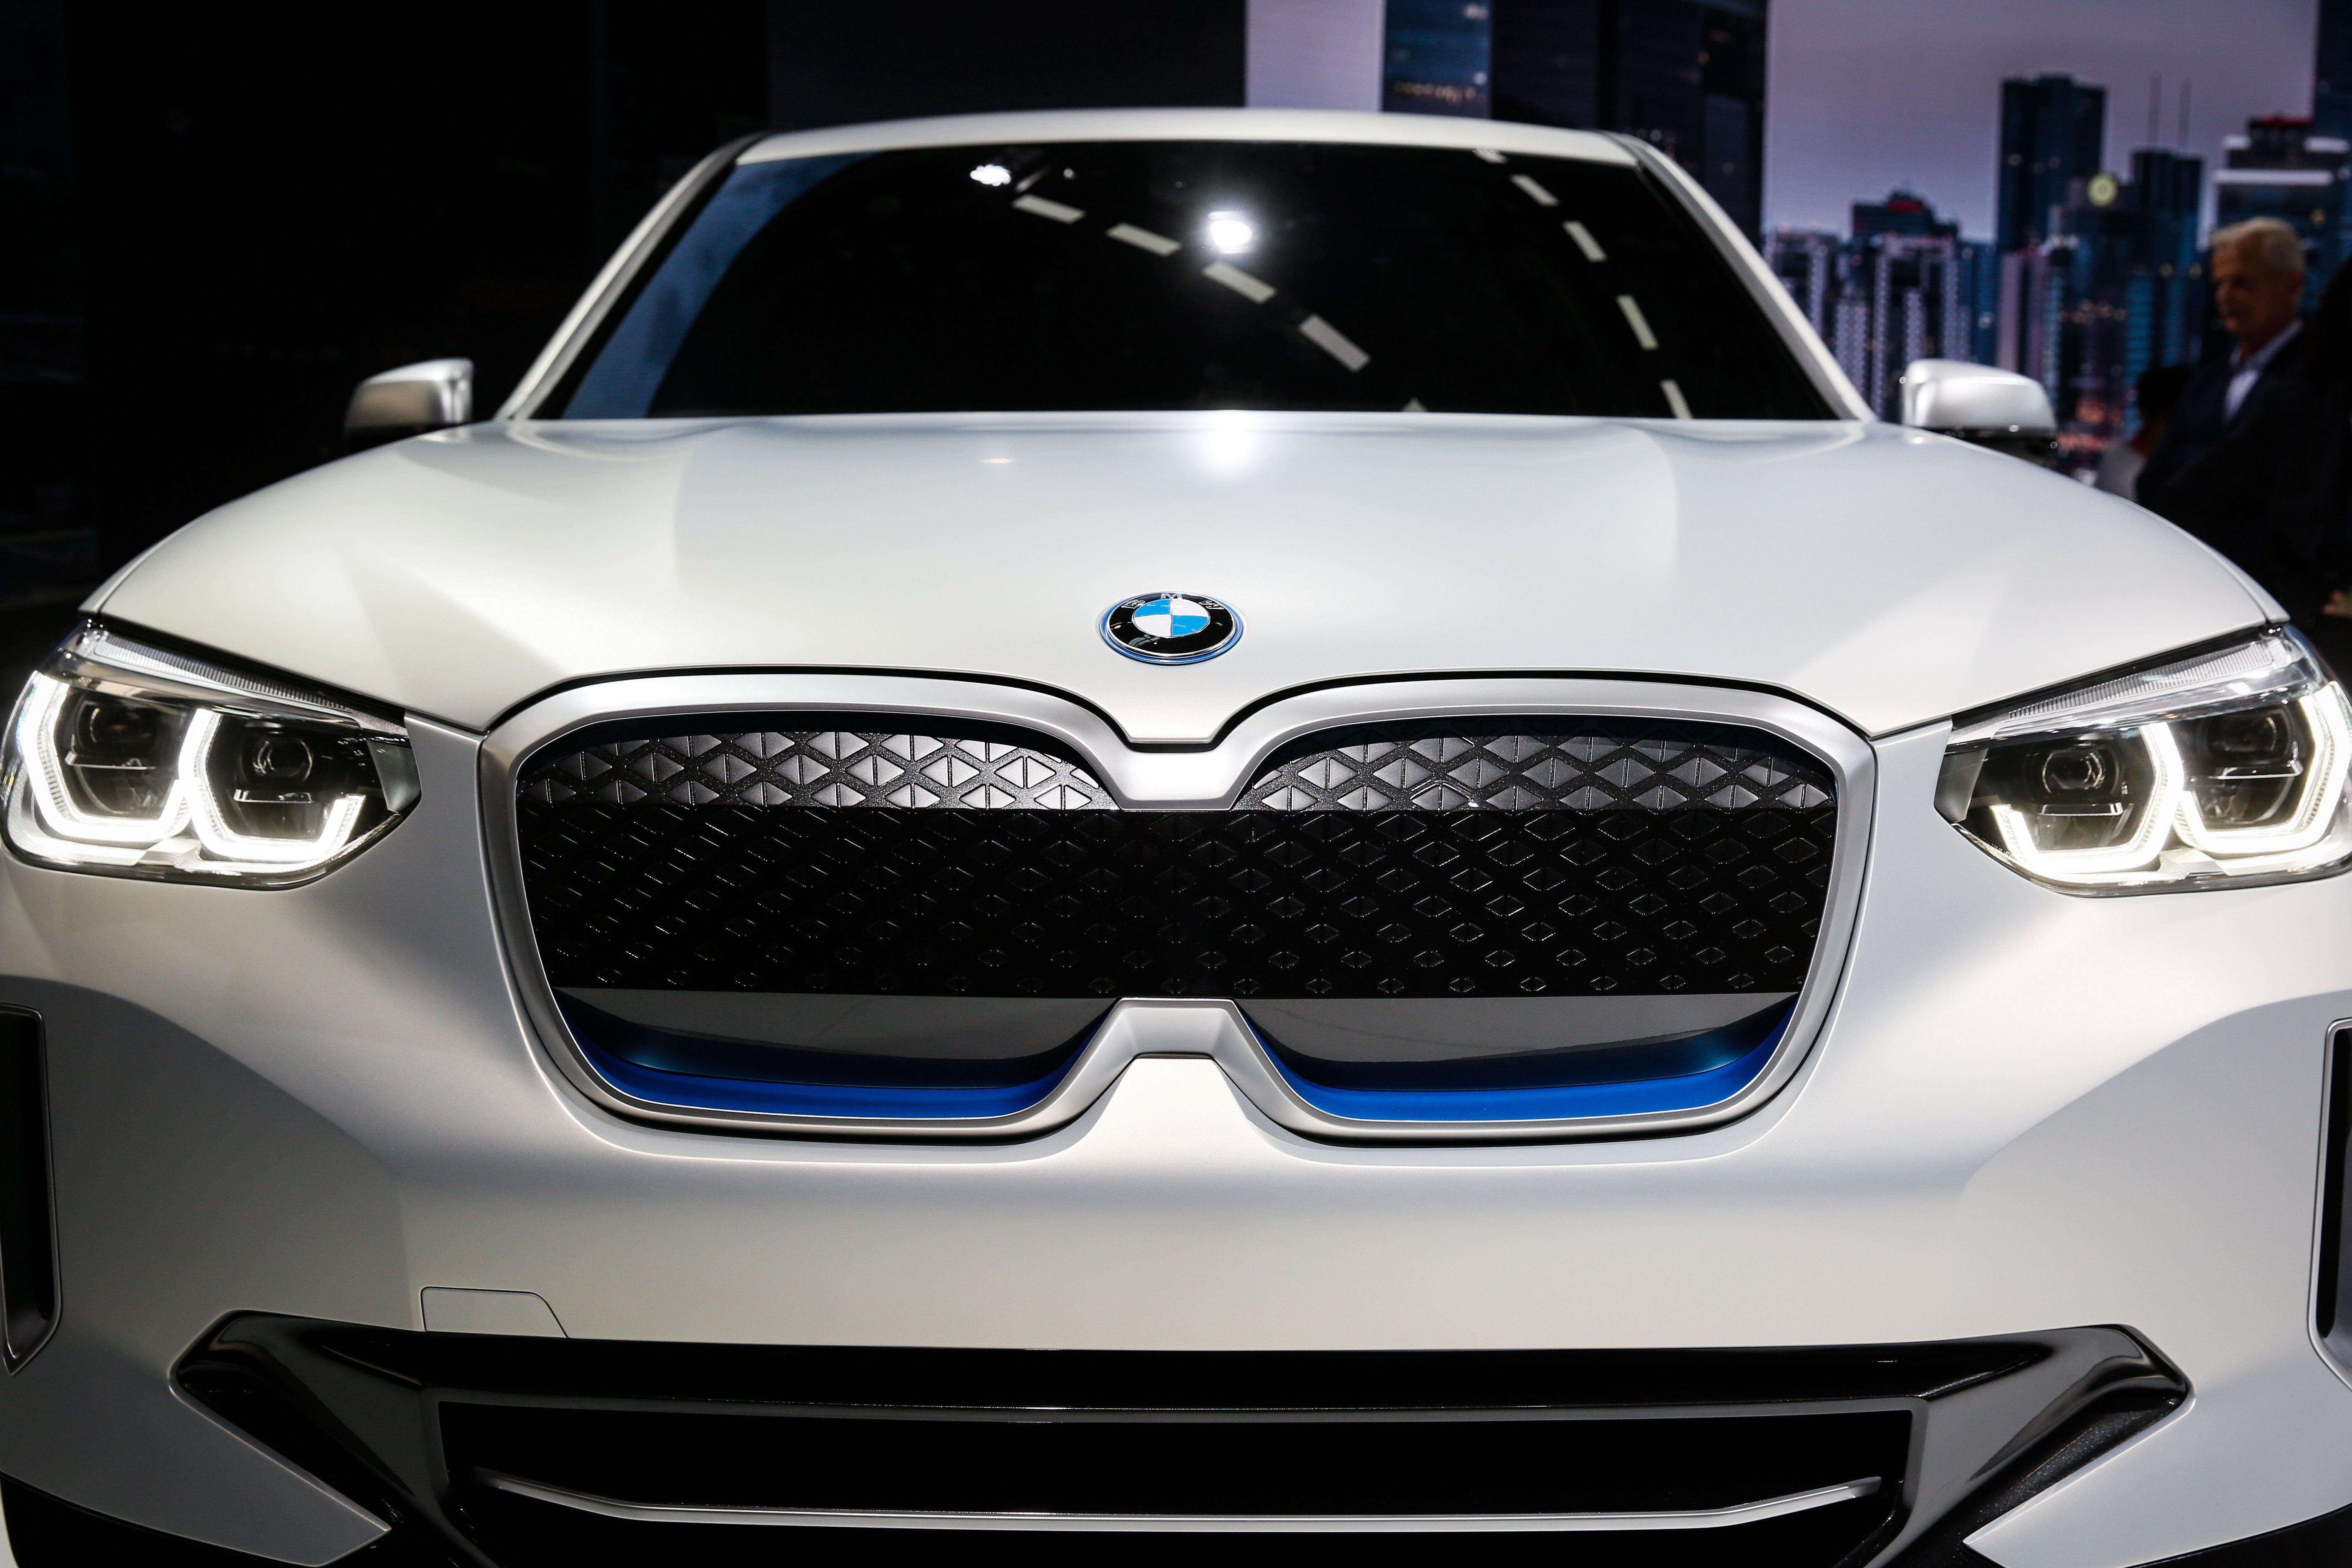 BMW lässt in China mehr Autos von Partner bauen